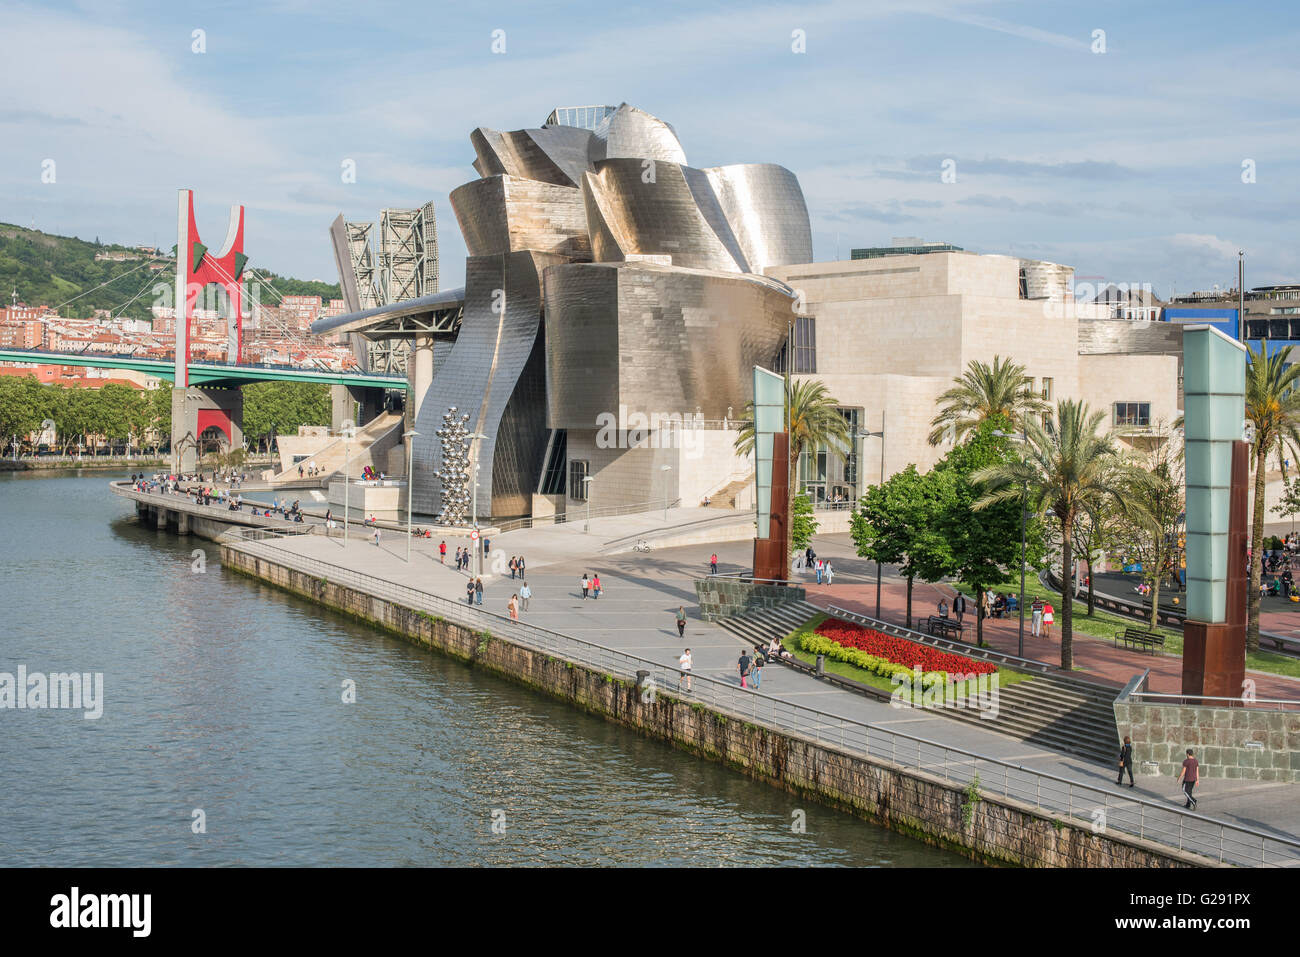 Guggenheim museum, Bilbao, Spain Stock Photo